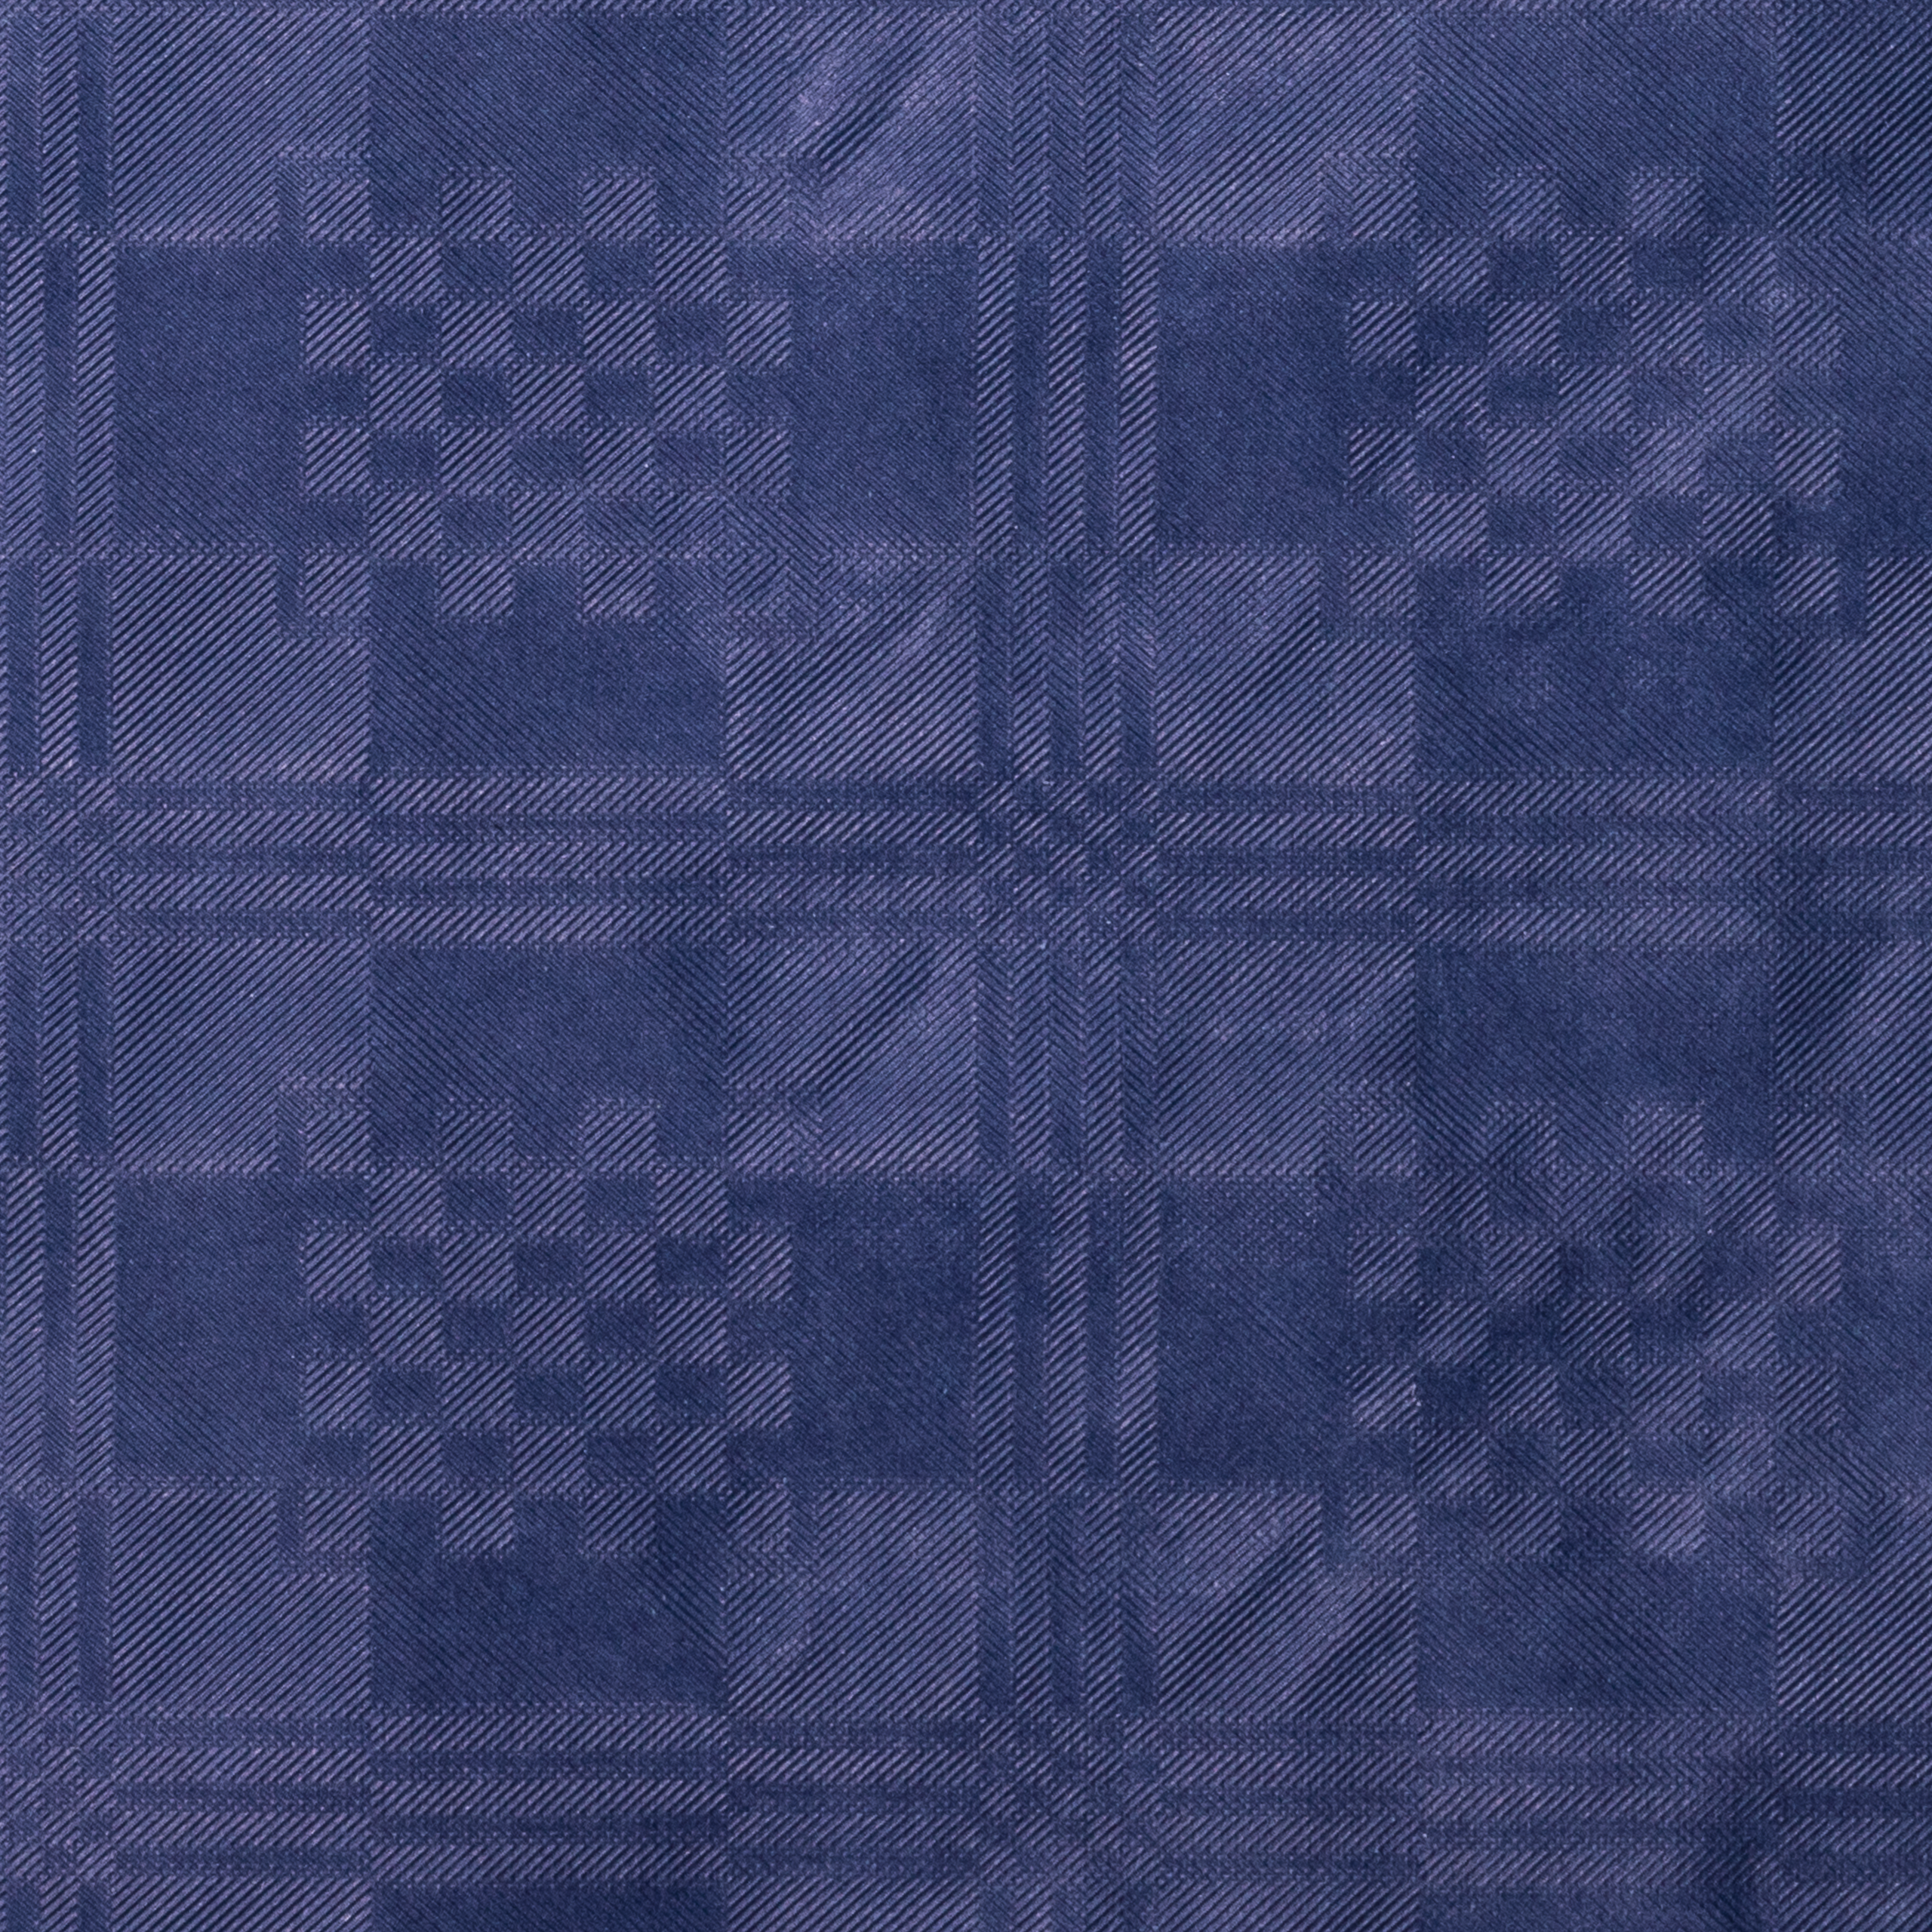 Tischtuchpapier uni dunkelblau, 1 x 50 m